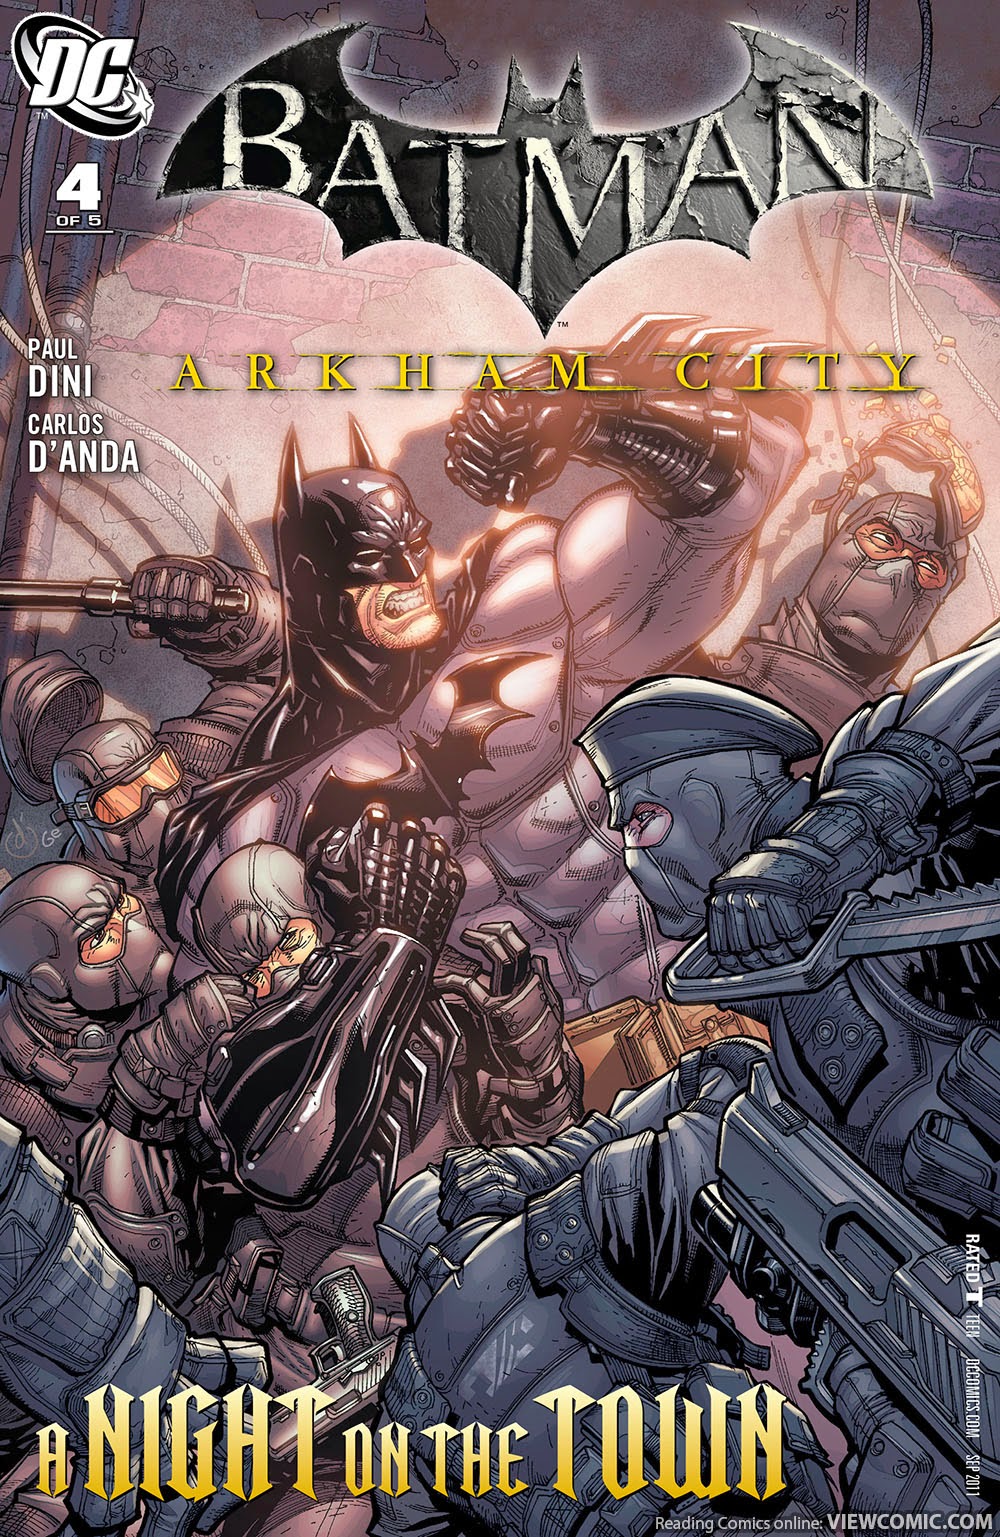 Batman â€“ Arkham City | Viewcomic reading comics online for ...